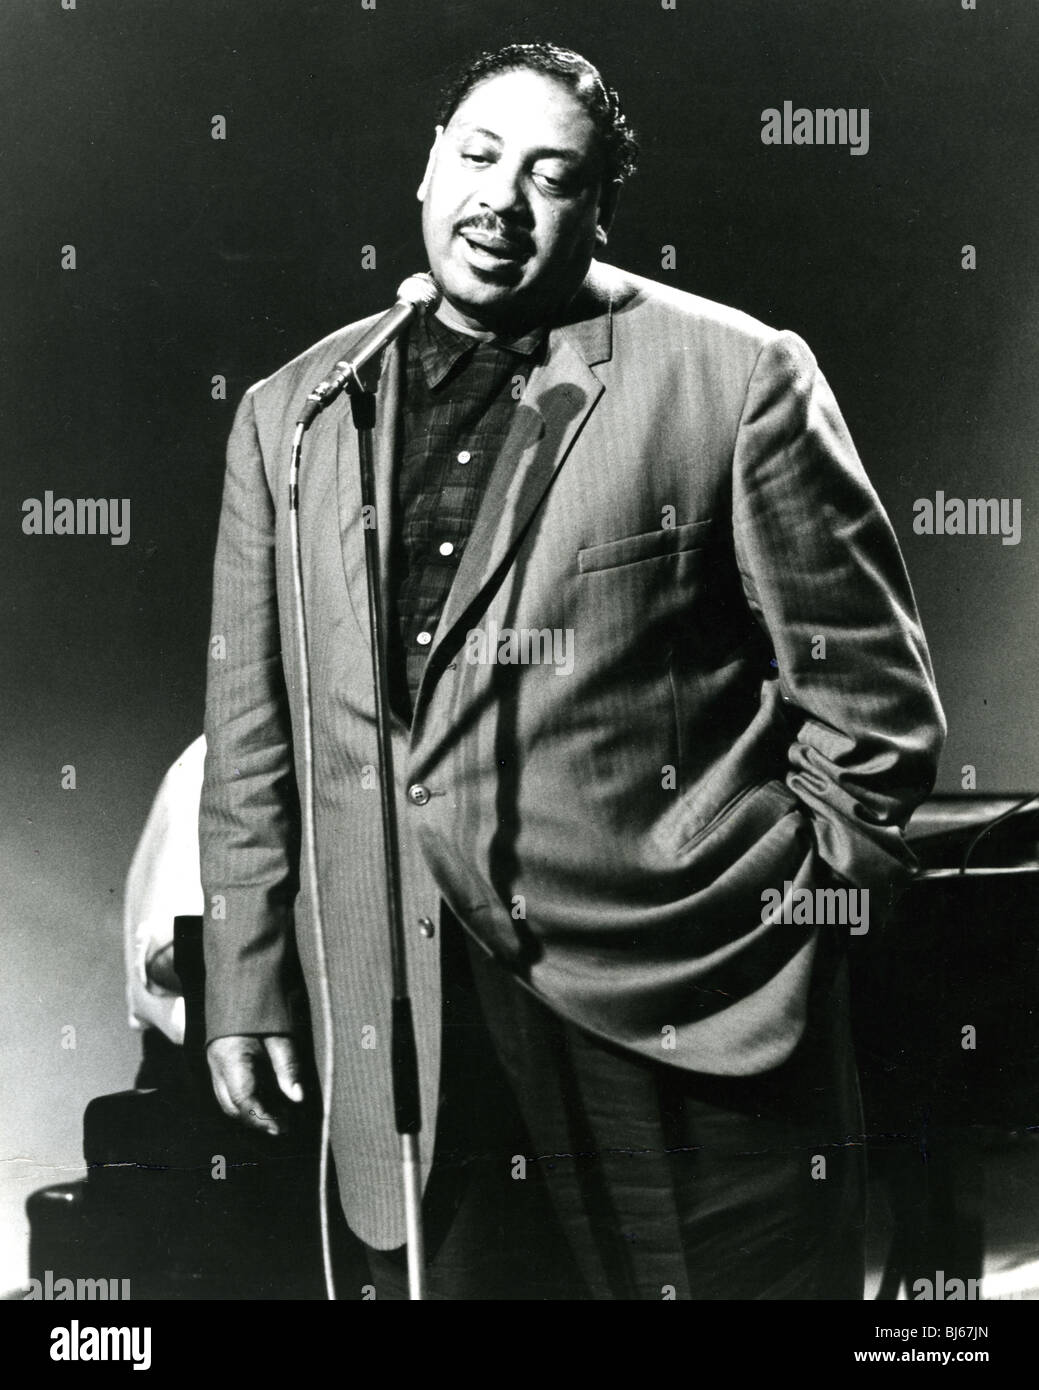 BIG JOE TURNER - chanteur de blues américain (1911-1985) Banque D'Images